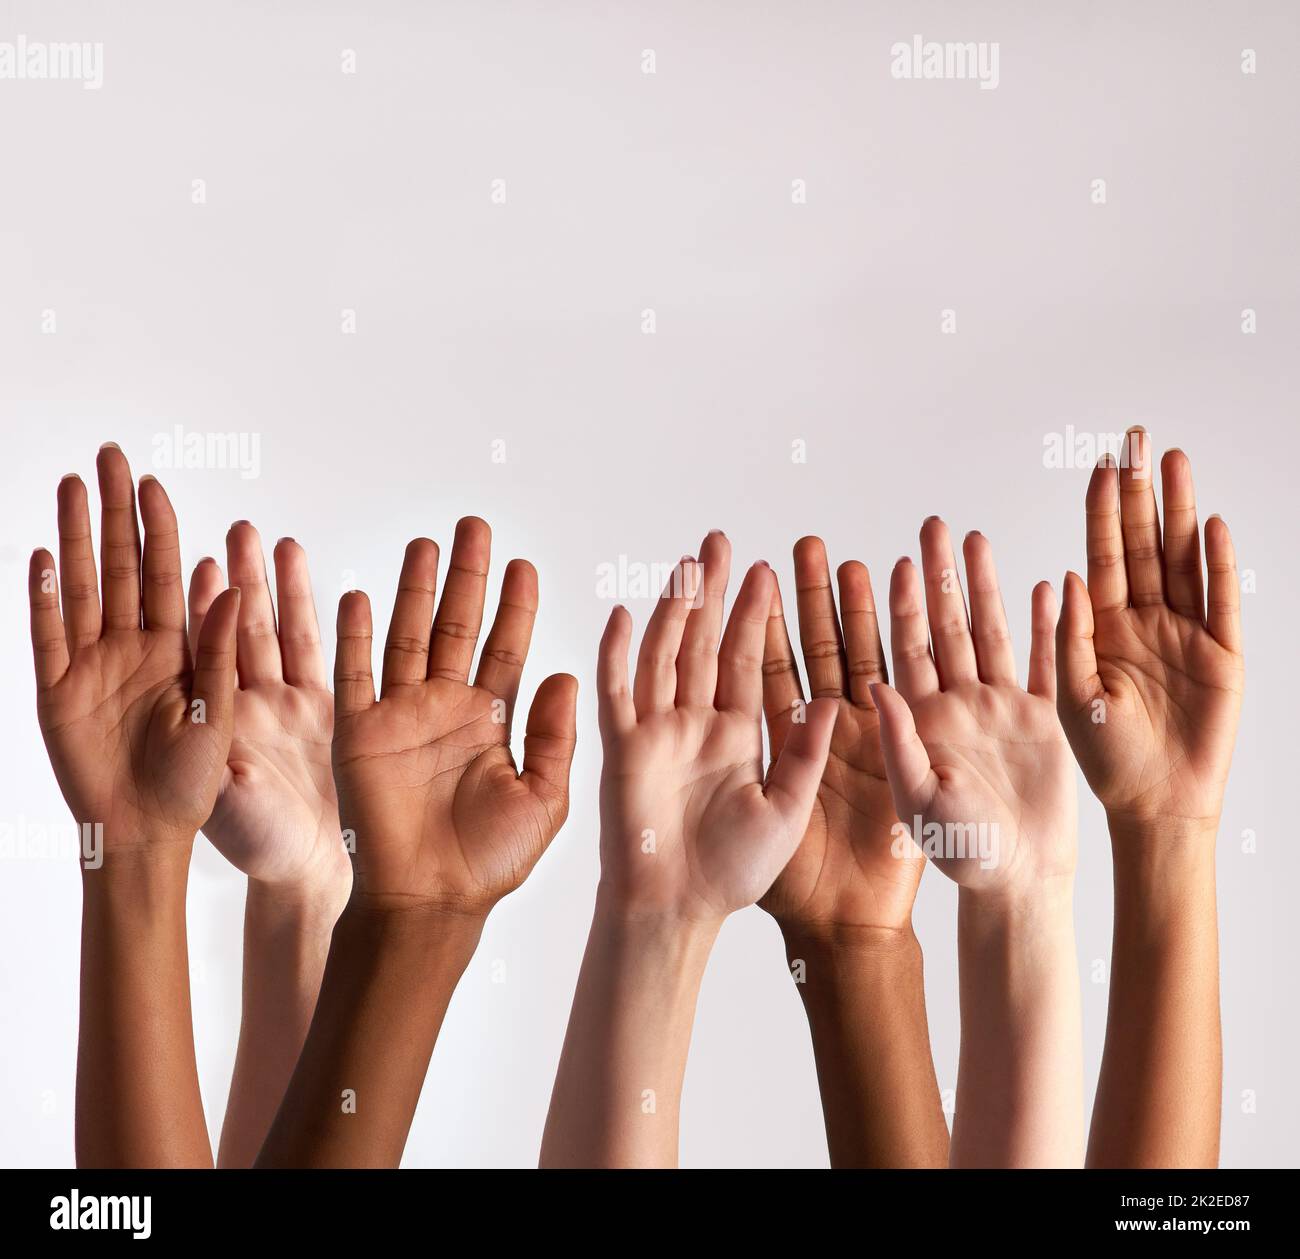 Heben Sie Ihre Hände, wenn Sie Vielfalt unterstützen. Ein kurzer Schuss einer Gruppe von Menschen, die ihre Hände heben. Stockfoto